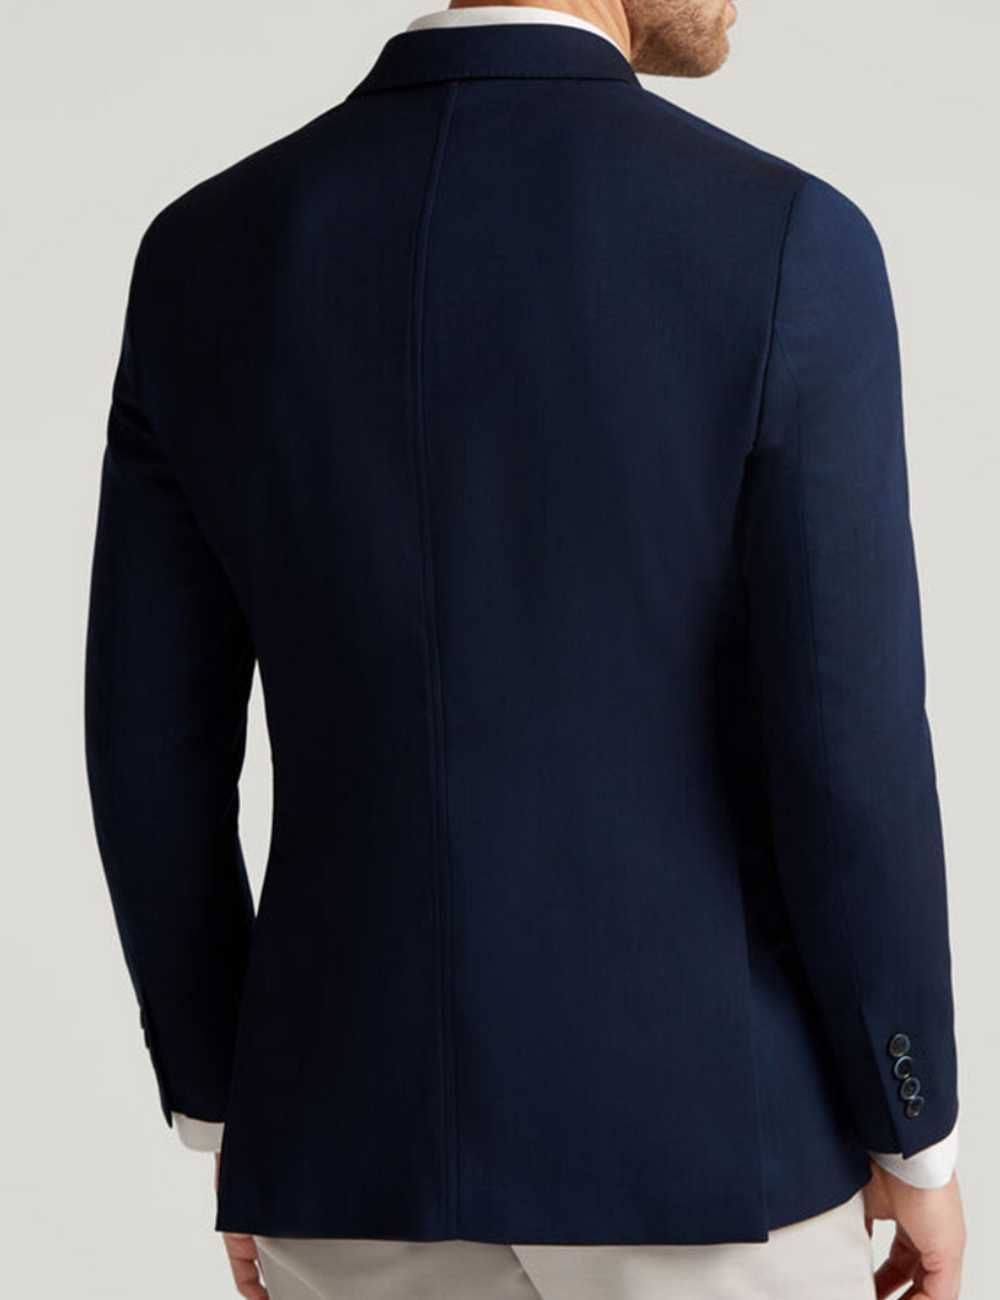 Sacou blazer slim 46 S premium Club Of Gents lana extrafina albastru